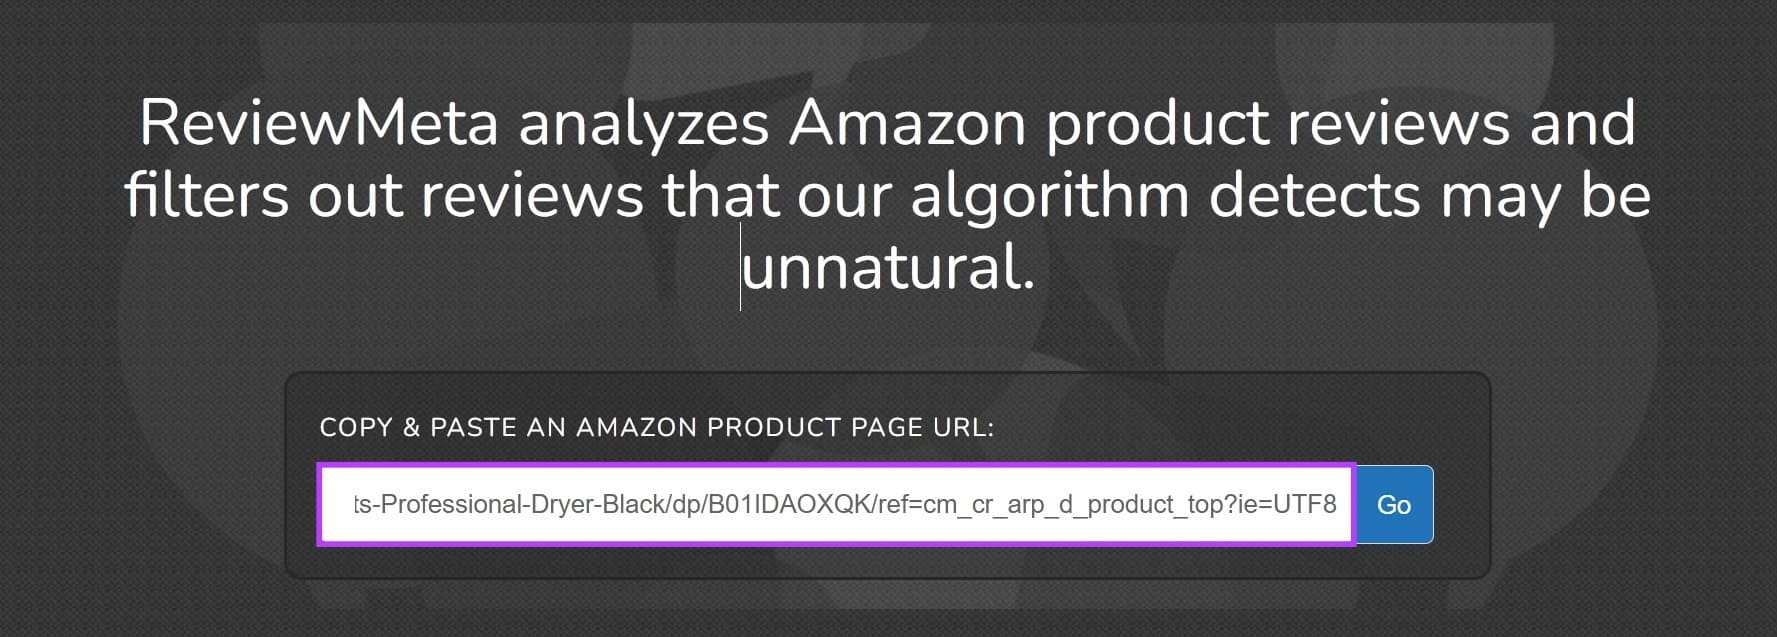 7 طرق لاكتشاف مراجعات المنتجات المزيفة على Amazon - %categories